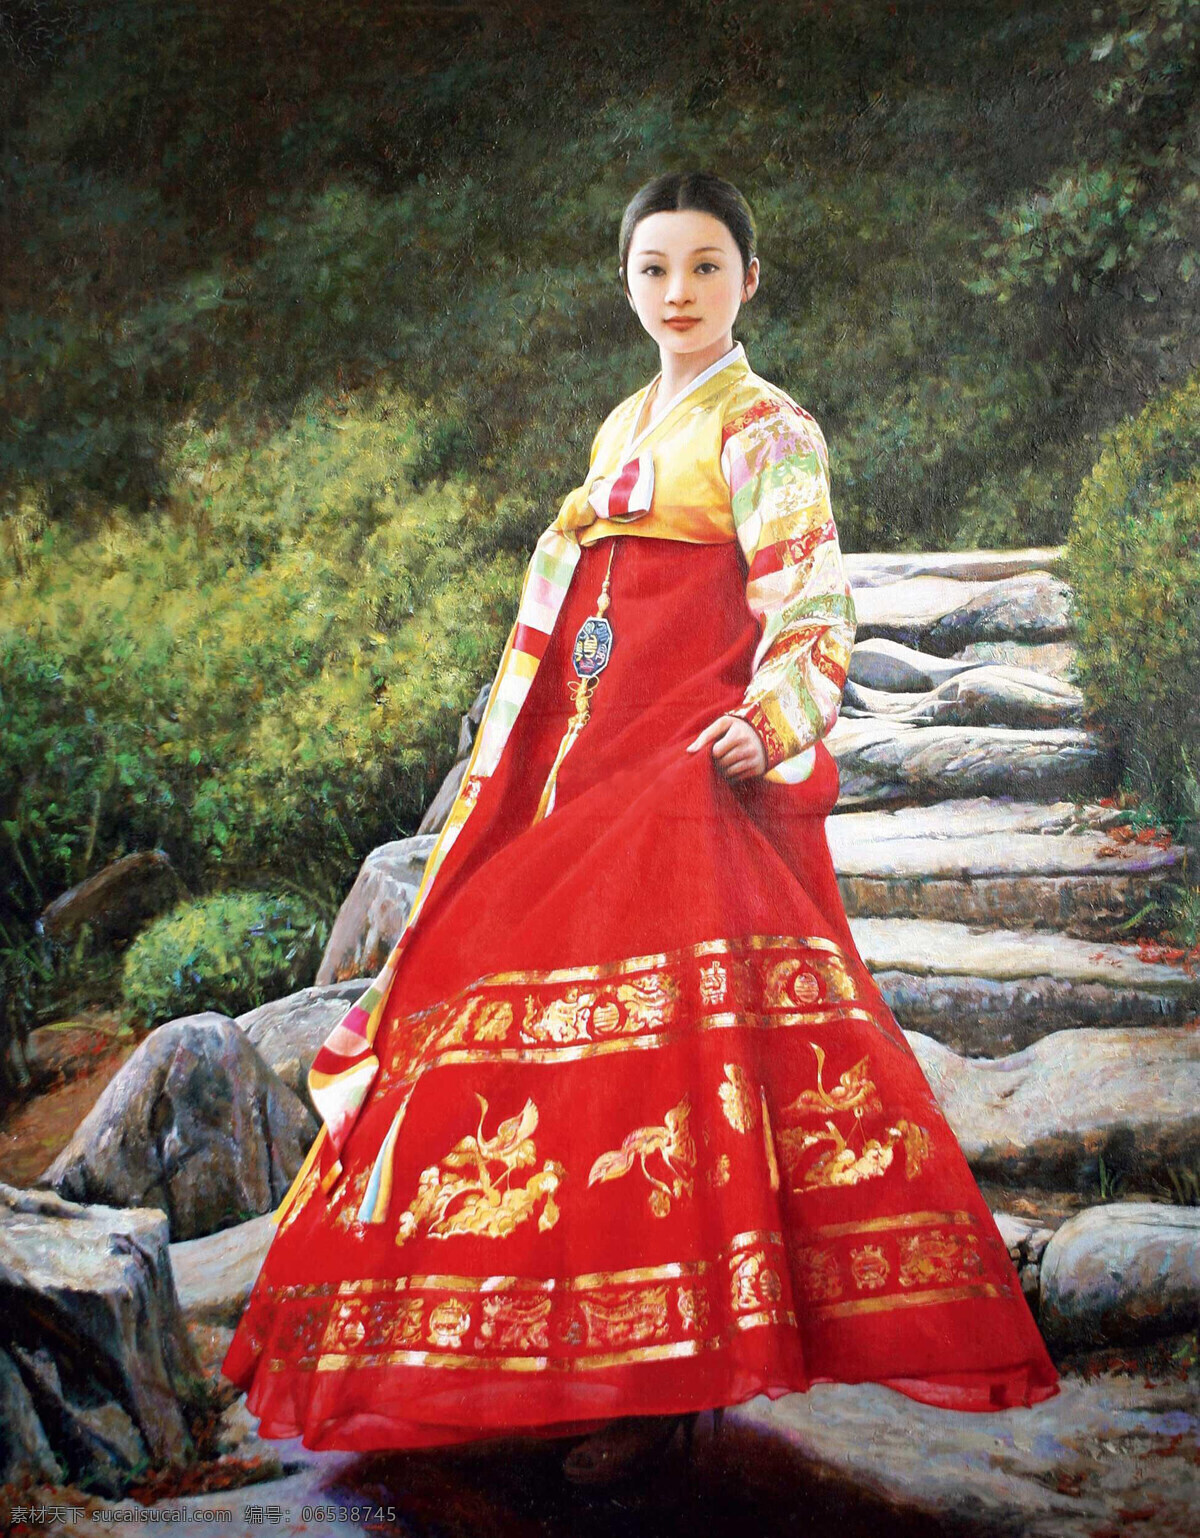 北方有佳人 美女 年轻女子 女人 山路 石级 红裙 长裙 朝鲜 朝鲜画 油画 朝鲜油画 布面油画 人物画 绘画书法 文化艺术